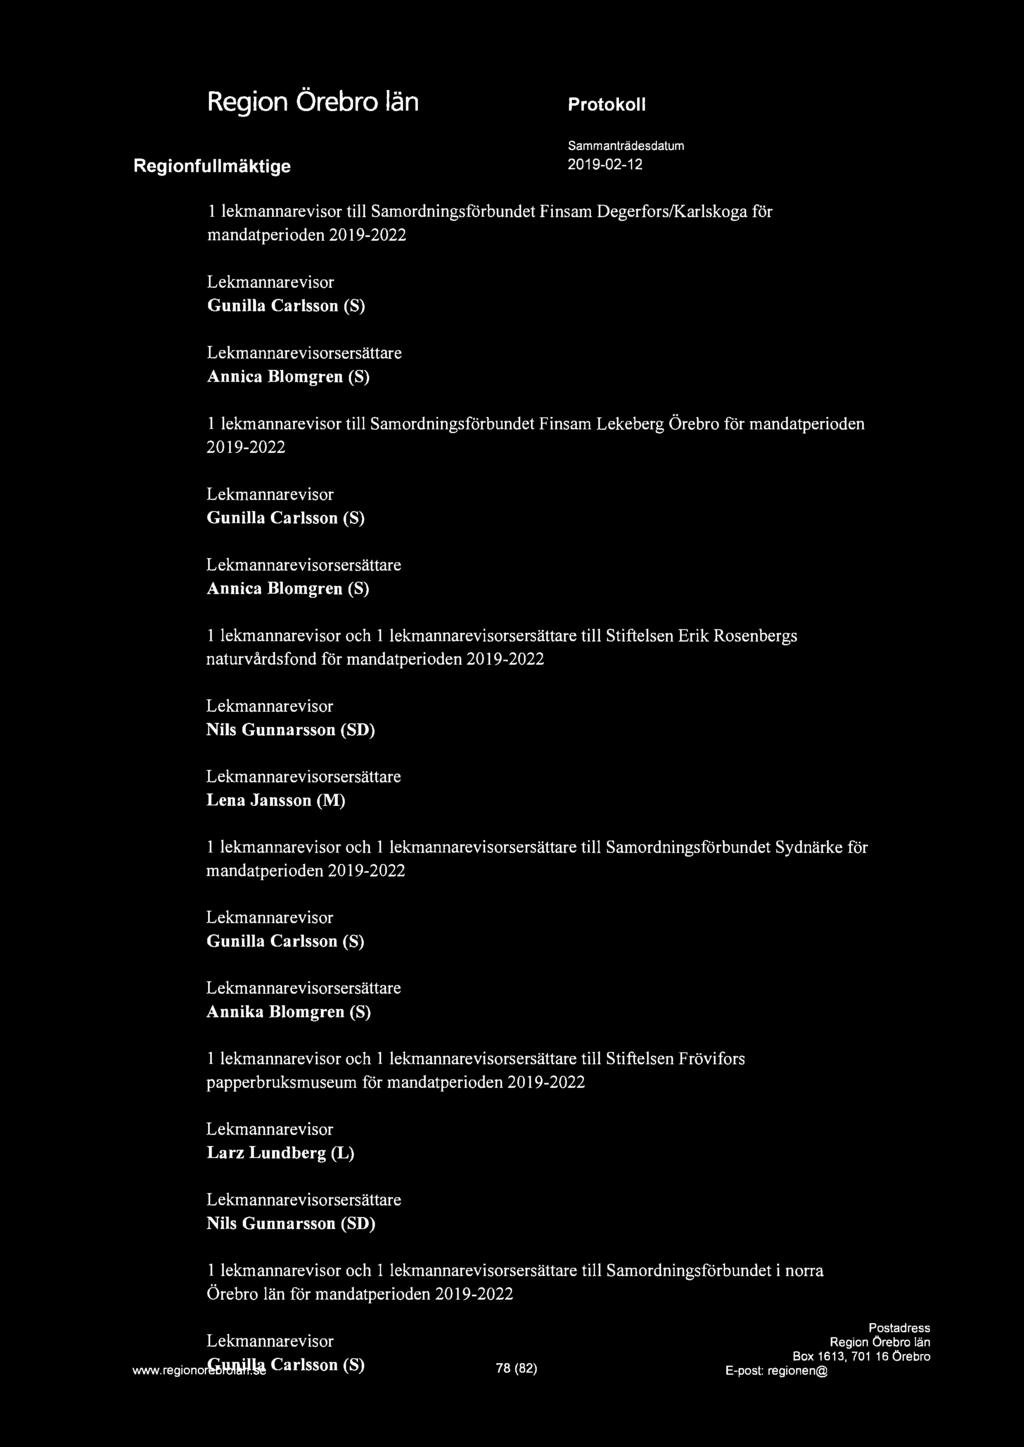 a 1 lekmannarevisor till Samordningsförbundet Finsam Degerfors/Karlskoga för mandatperioden 2019-2022 Lekmannarevisor Gunilla Carlsson (S) Lekmannarevisorsersättare Annica Blomgren (S) 1